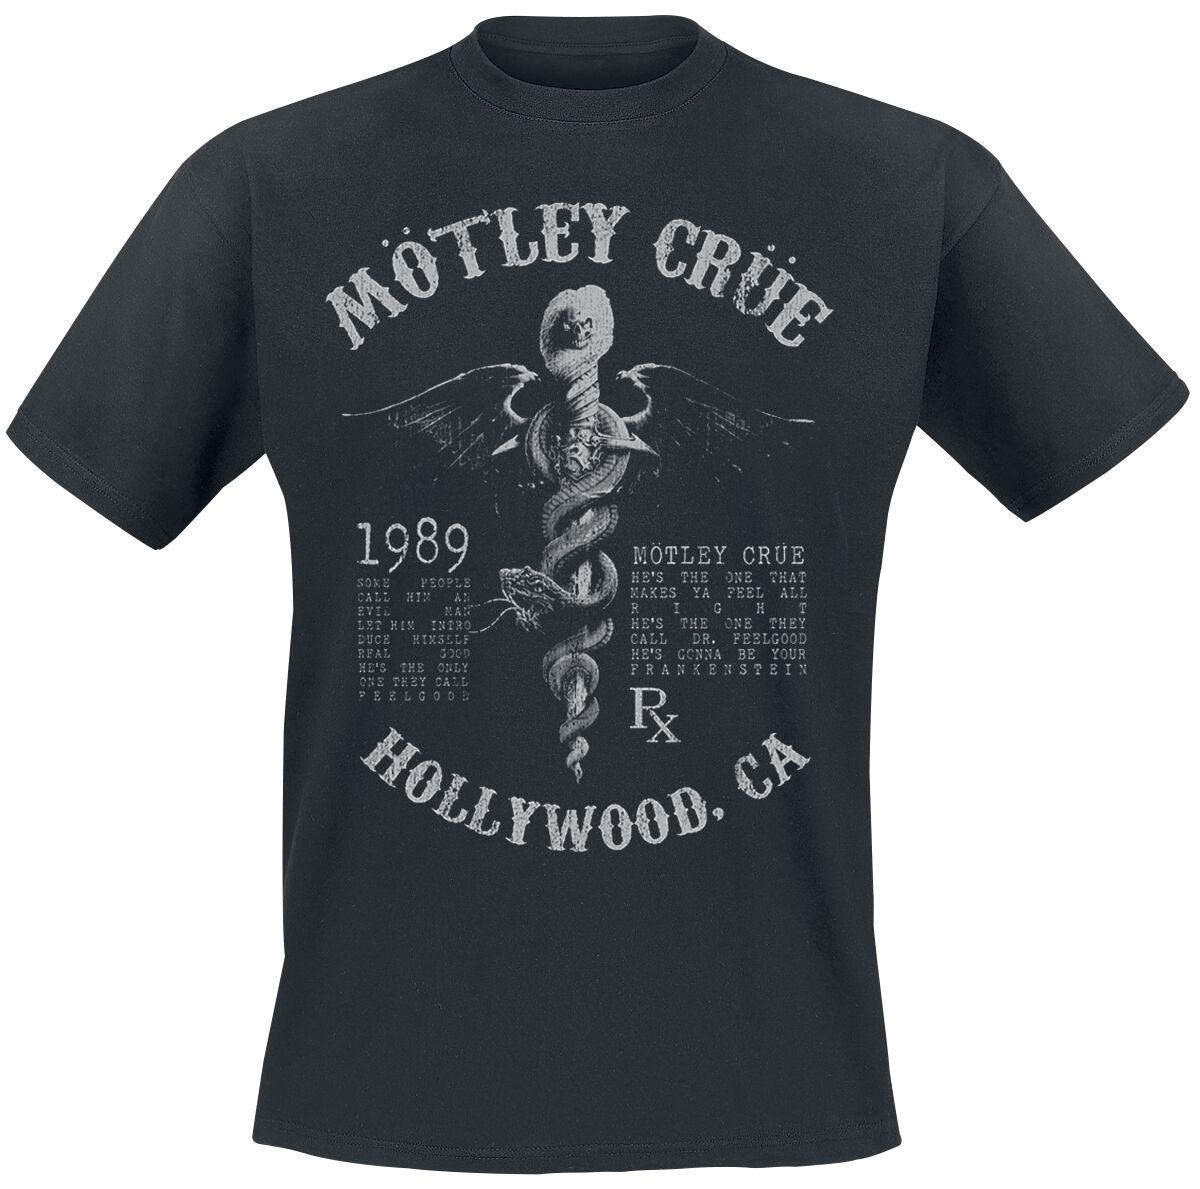 Mötley Crüe T-Shirt - Faded Feel Good Lyrics - S bis XXL - für Männer - Größe M - schwarz  - Lizenziertes Merchandise!